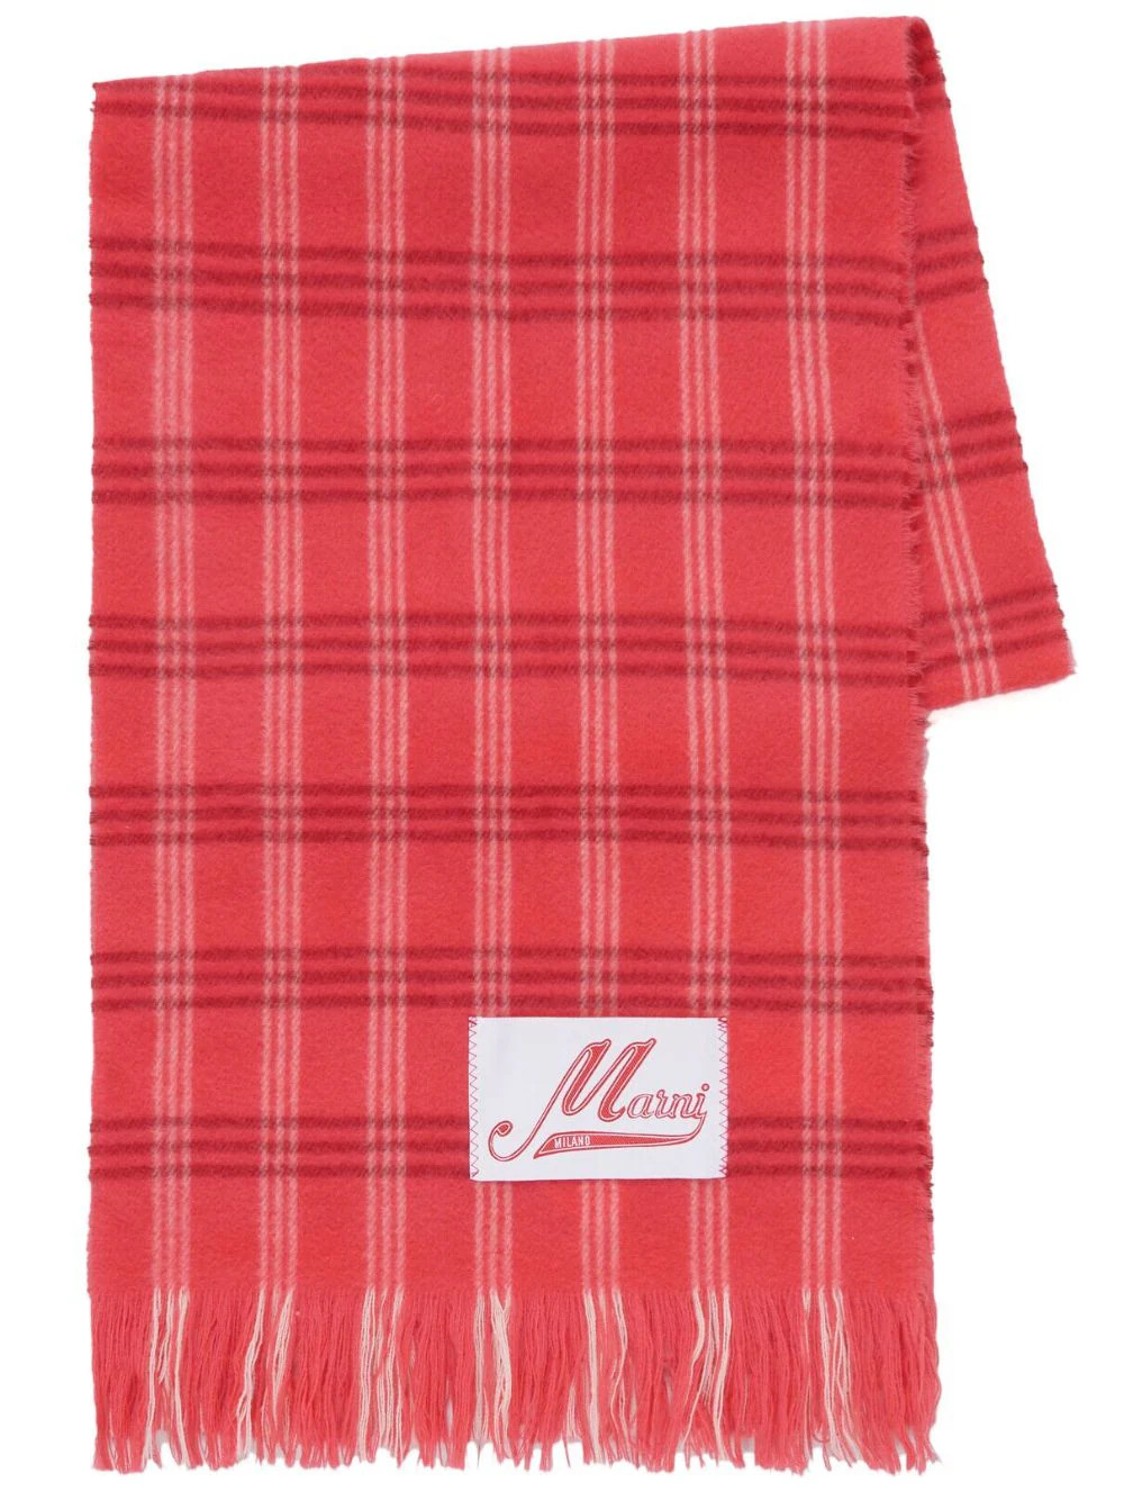 shop Marni  Accessori: Accessori Marni, sciarpa, lunga, a quadri bianchi su fondo rosso.

Composizione: 100% lana vergine. number 2657